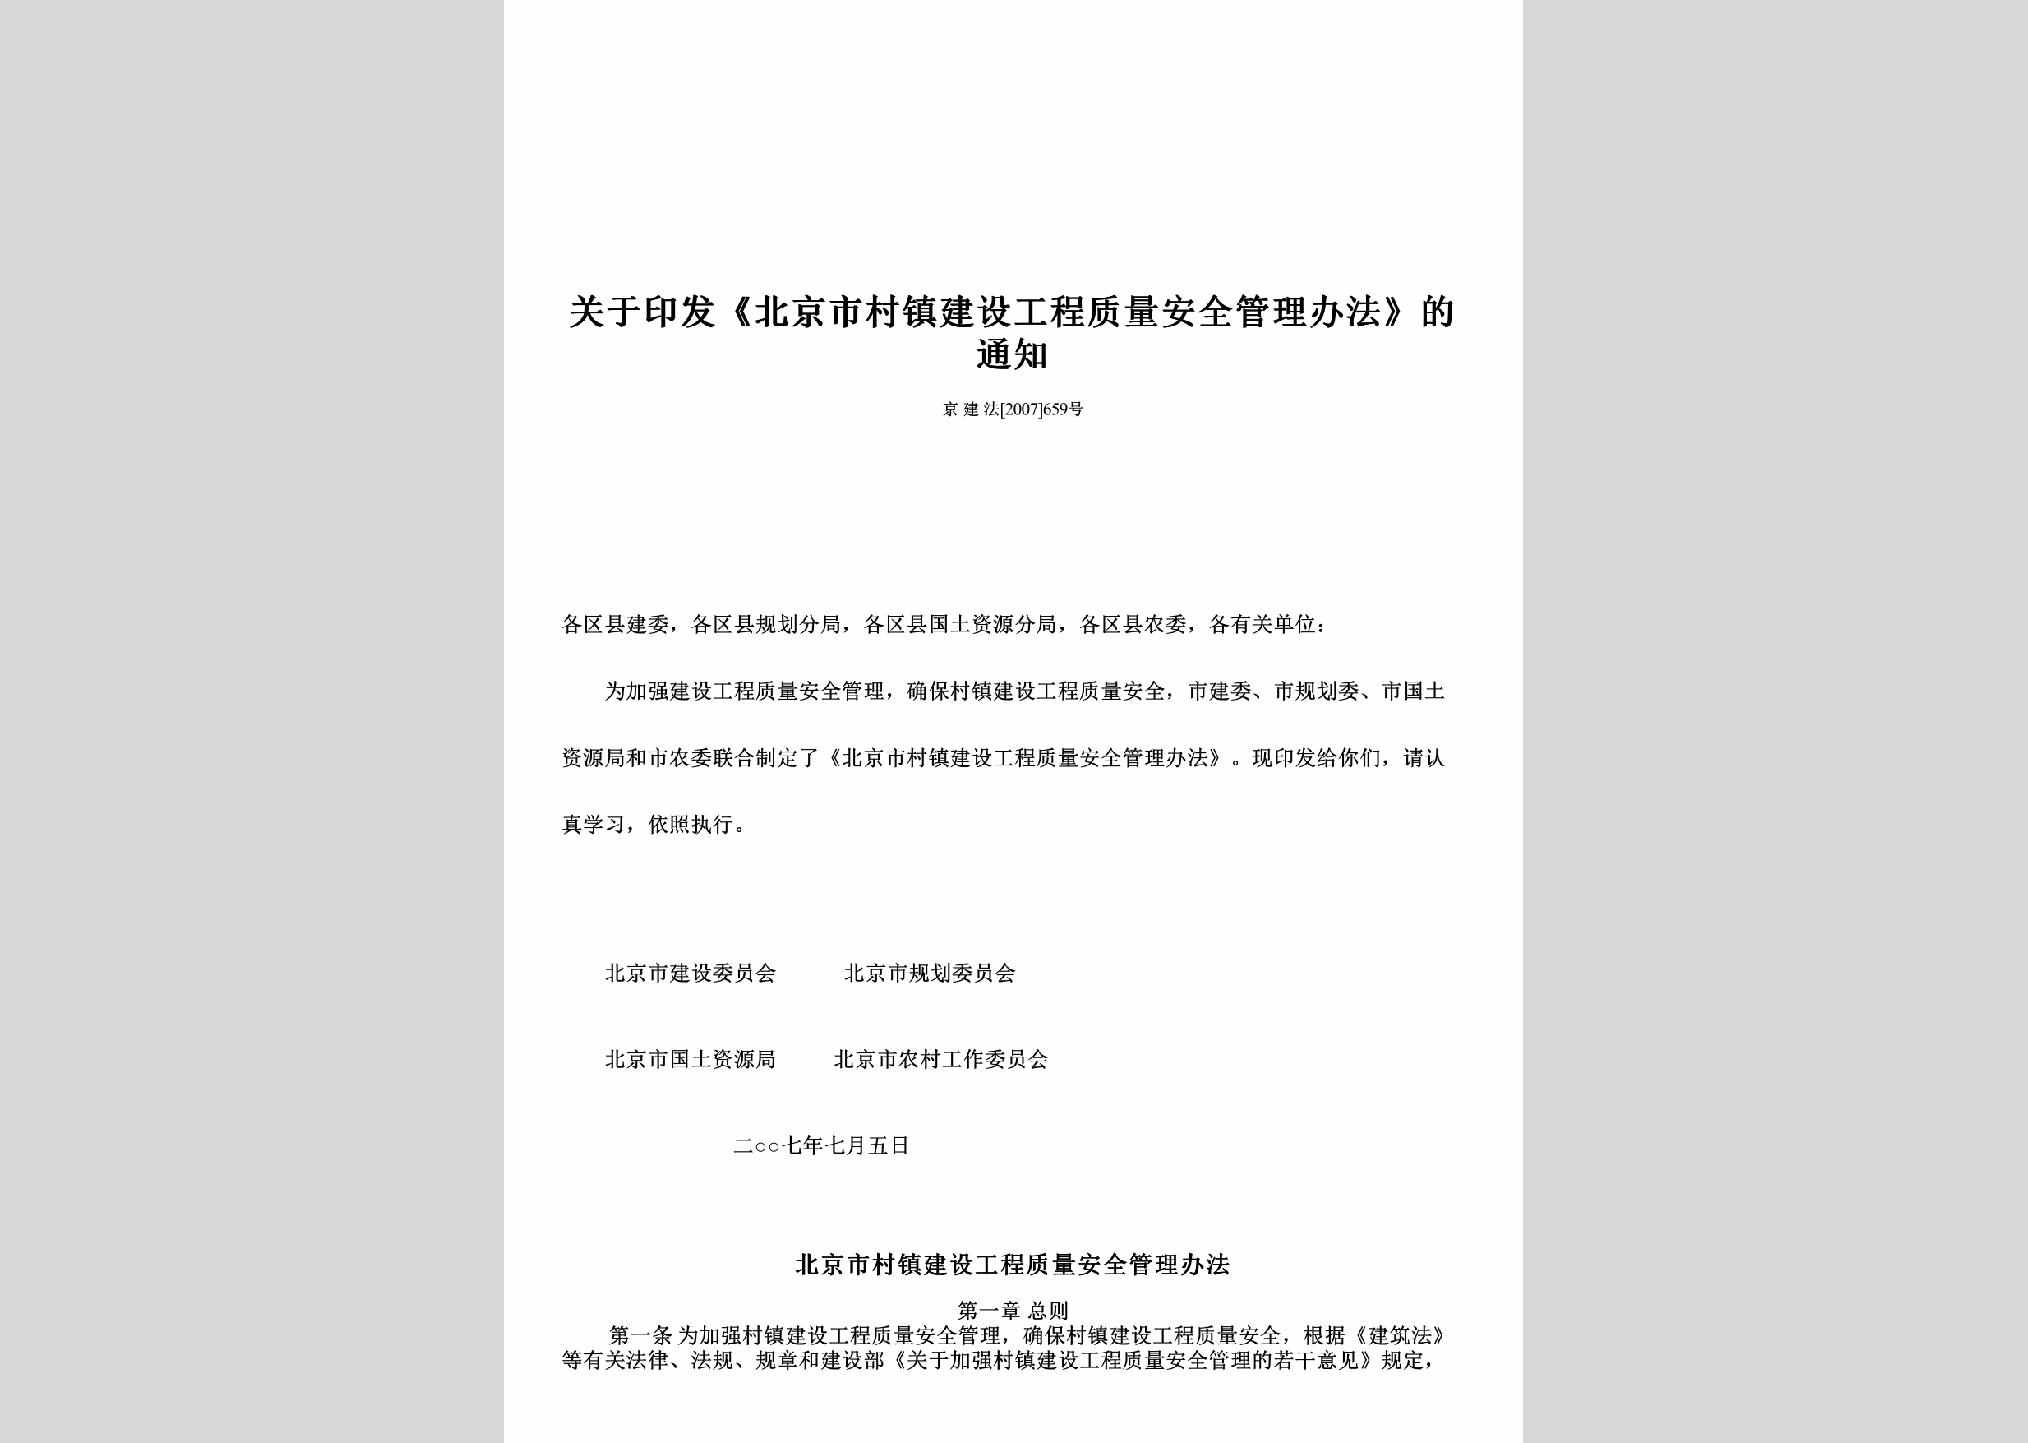 京建法[2007]659号：关于印发《北京市村镇建设工程质量安全管理办法》的通知